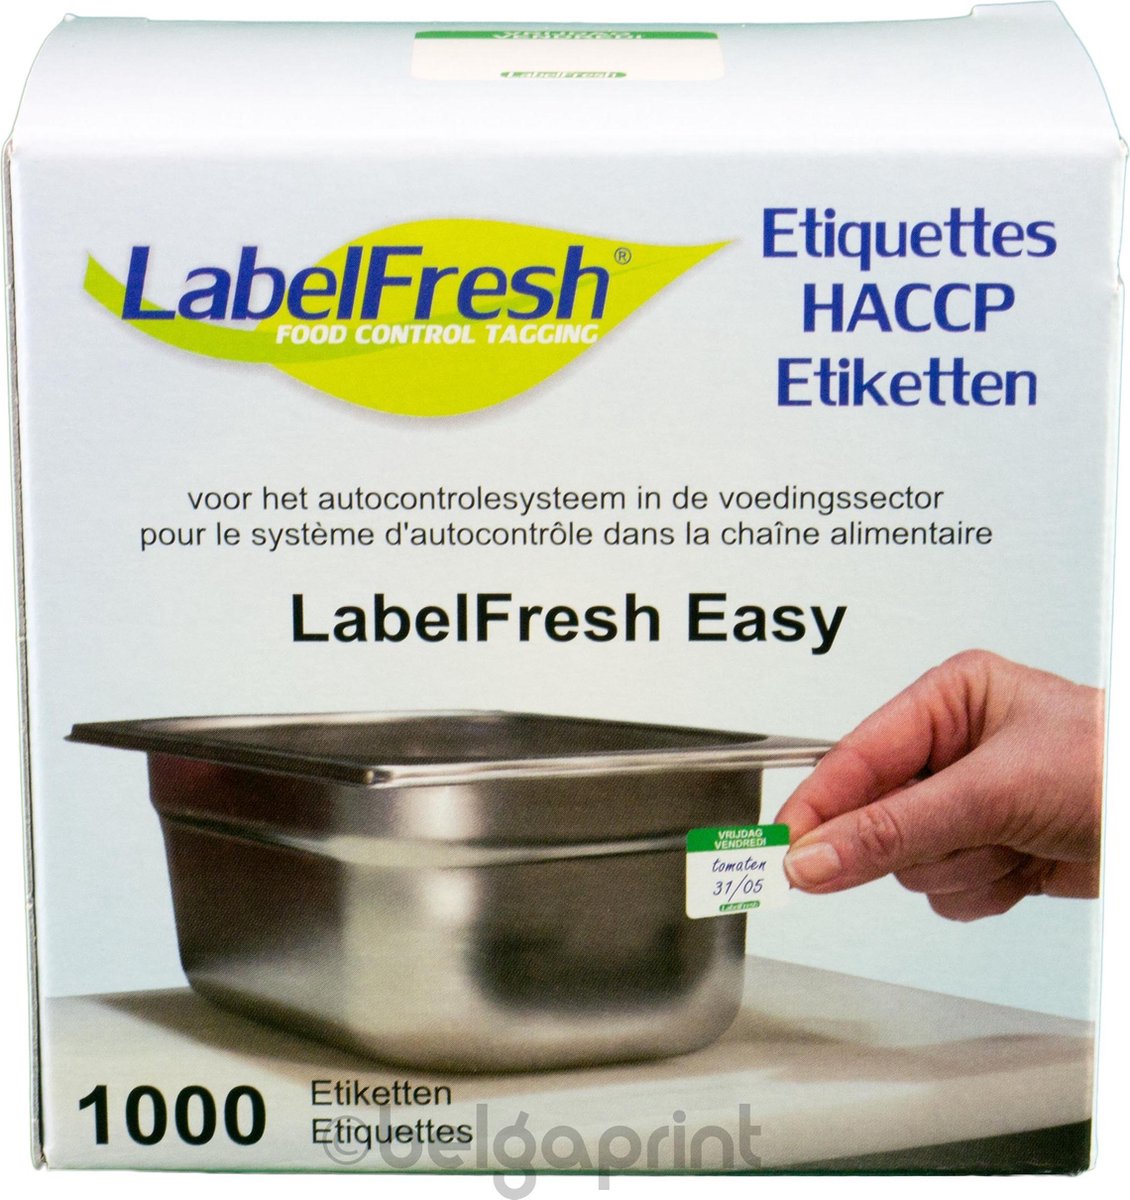 1000 LabelFresh Easy - 30x25 mm - vrijdag-vendredi - HACCP etiketten / stickers